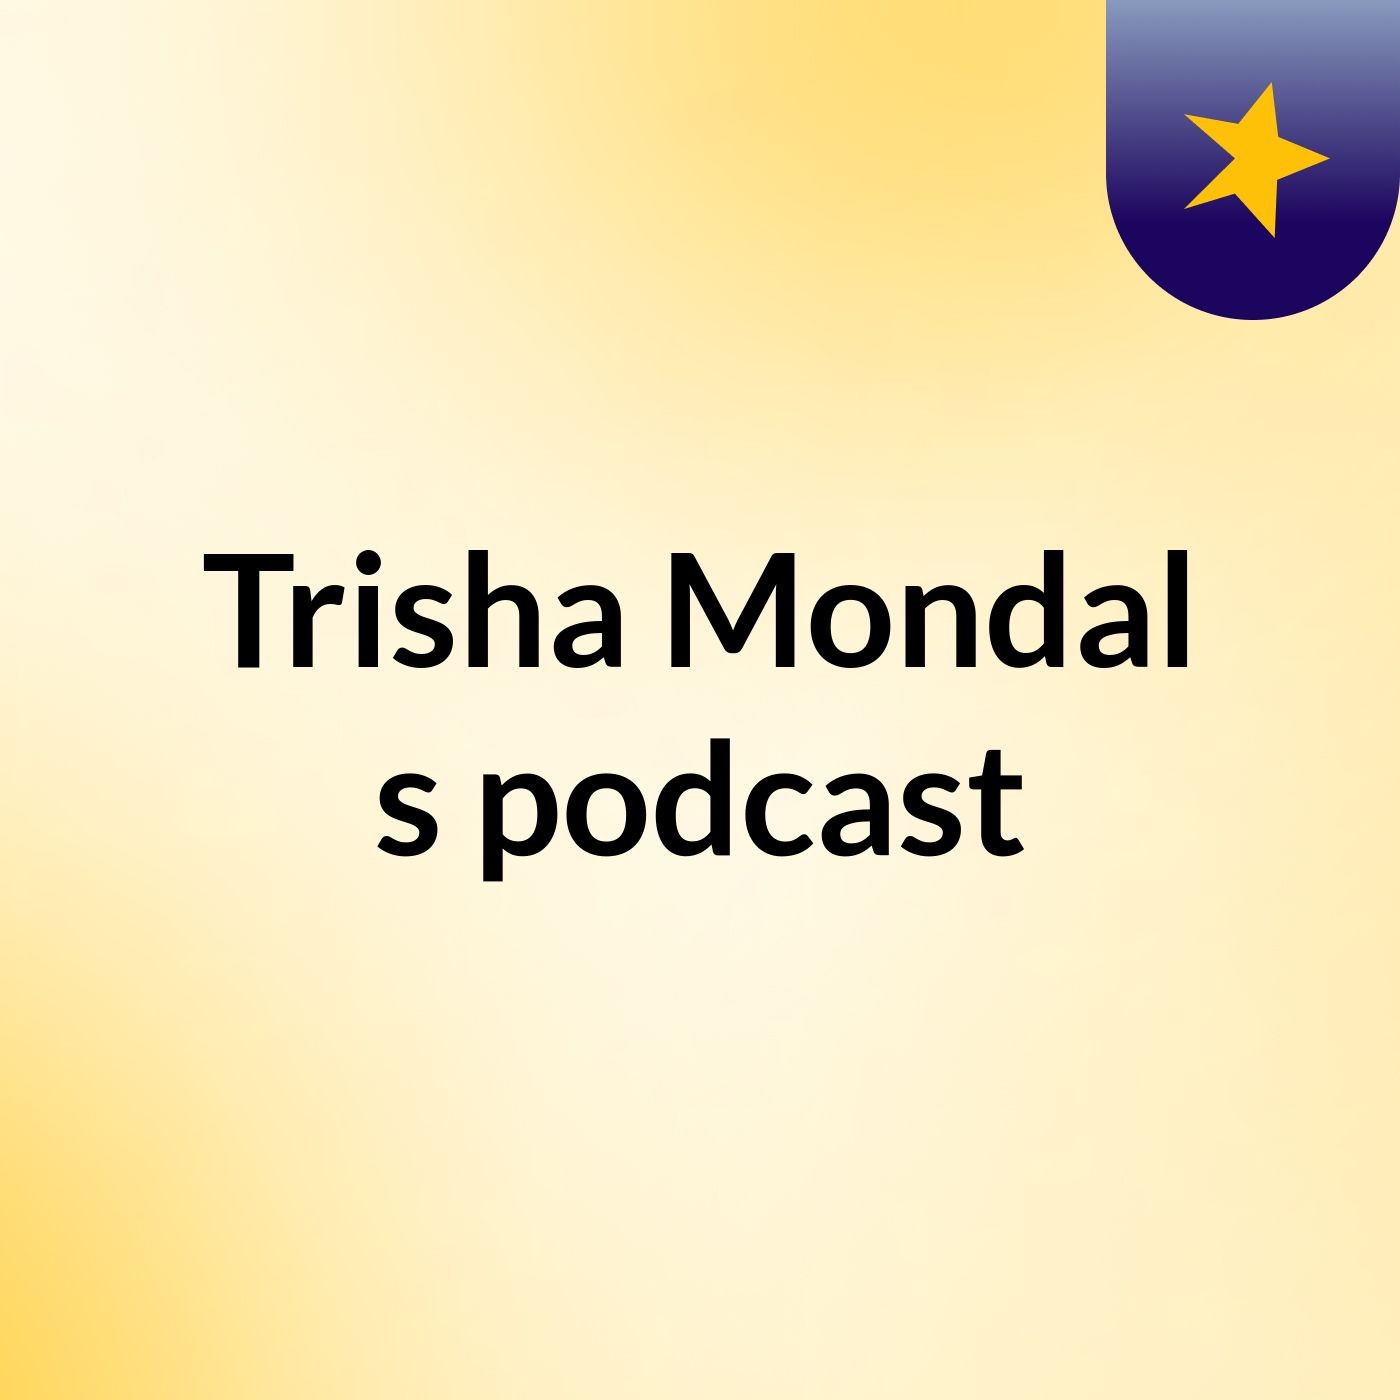 Trisha Mondal's podcast